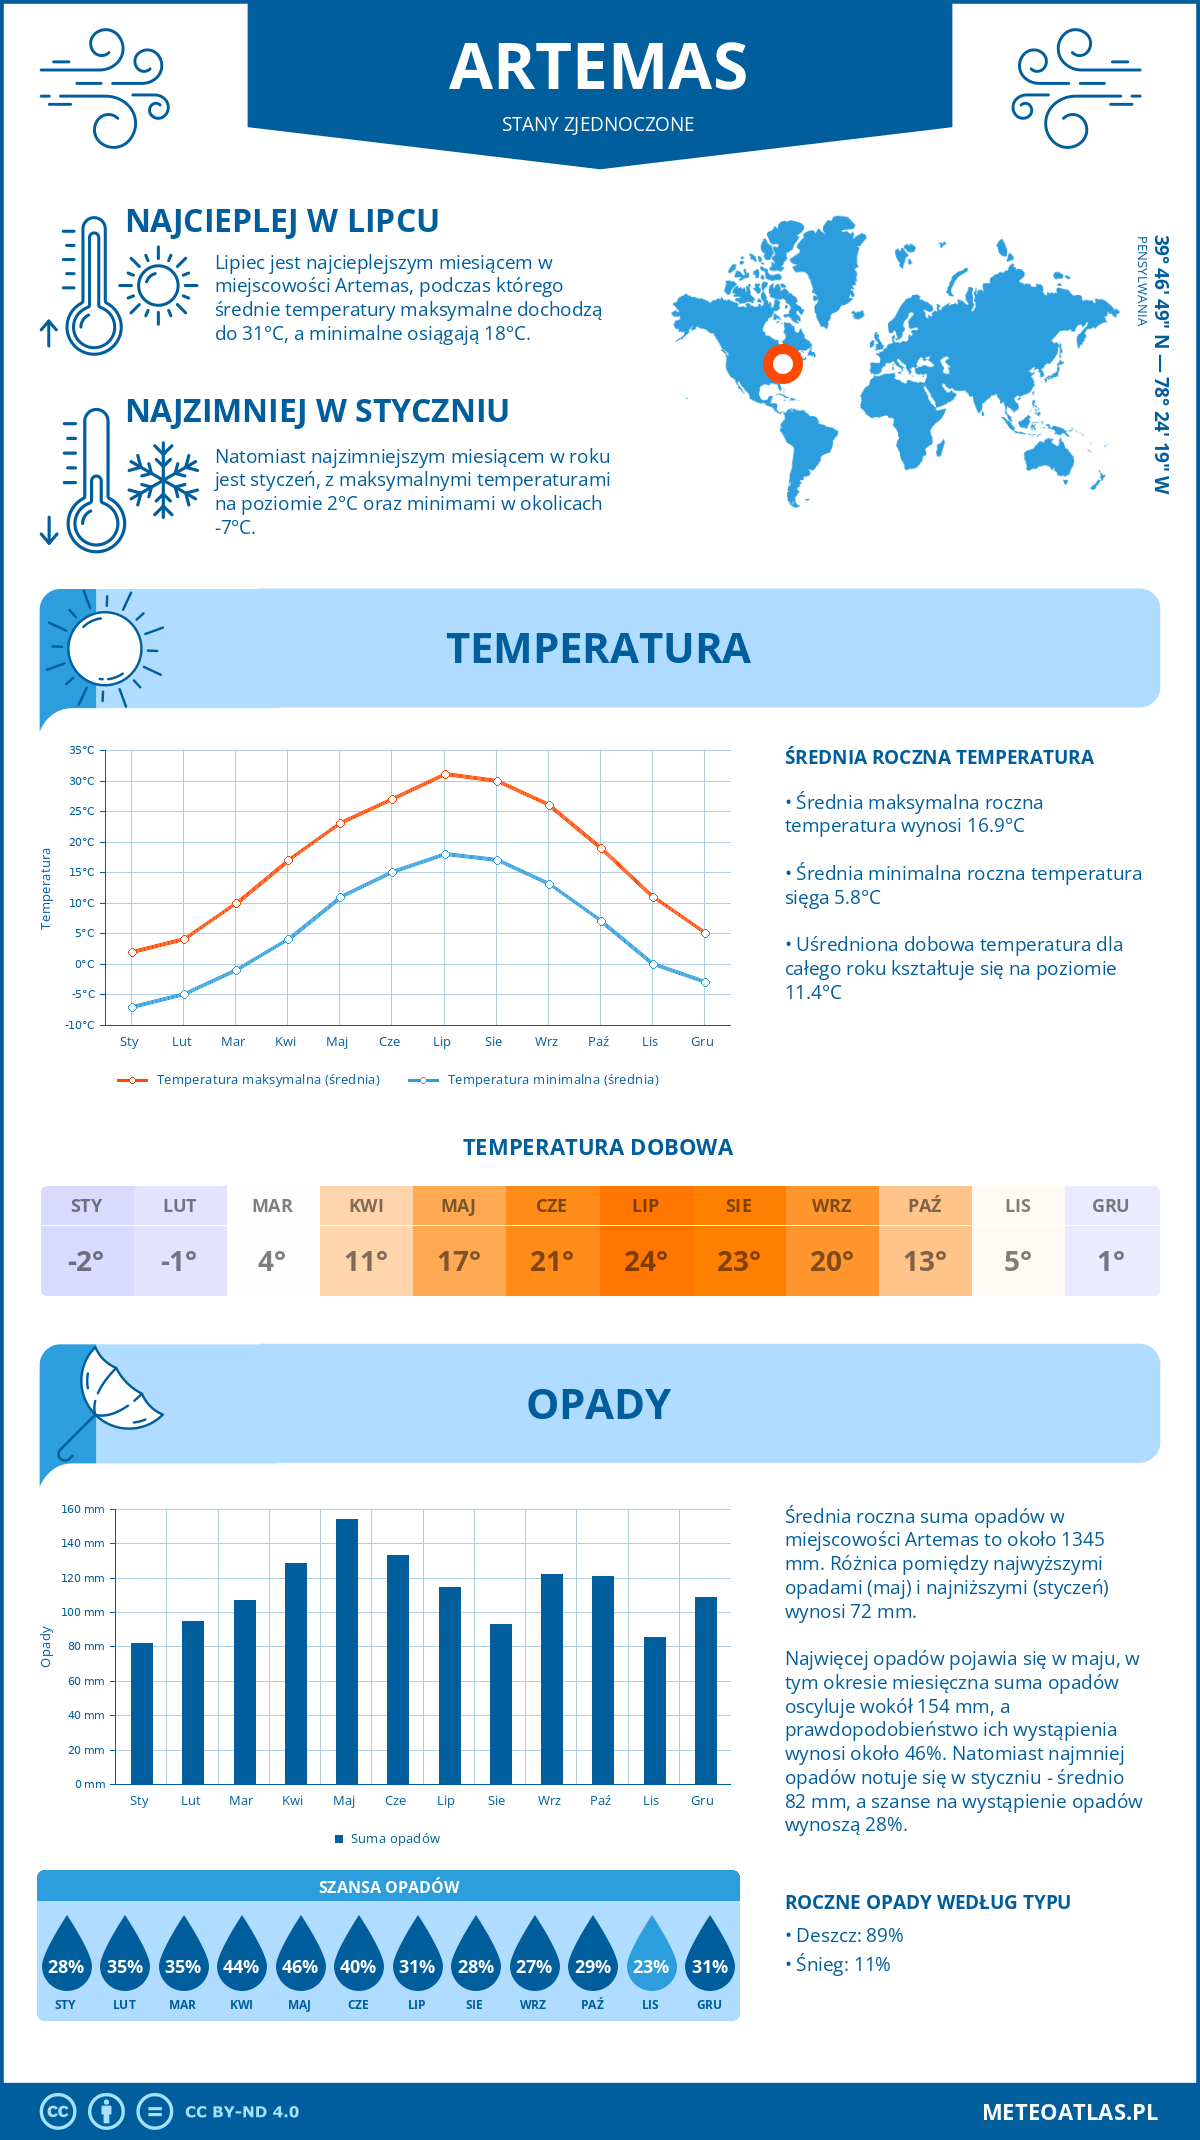 Pogoda Artemas (Stany Zjednoczone). Temperatura oraz opady.